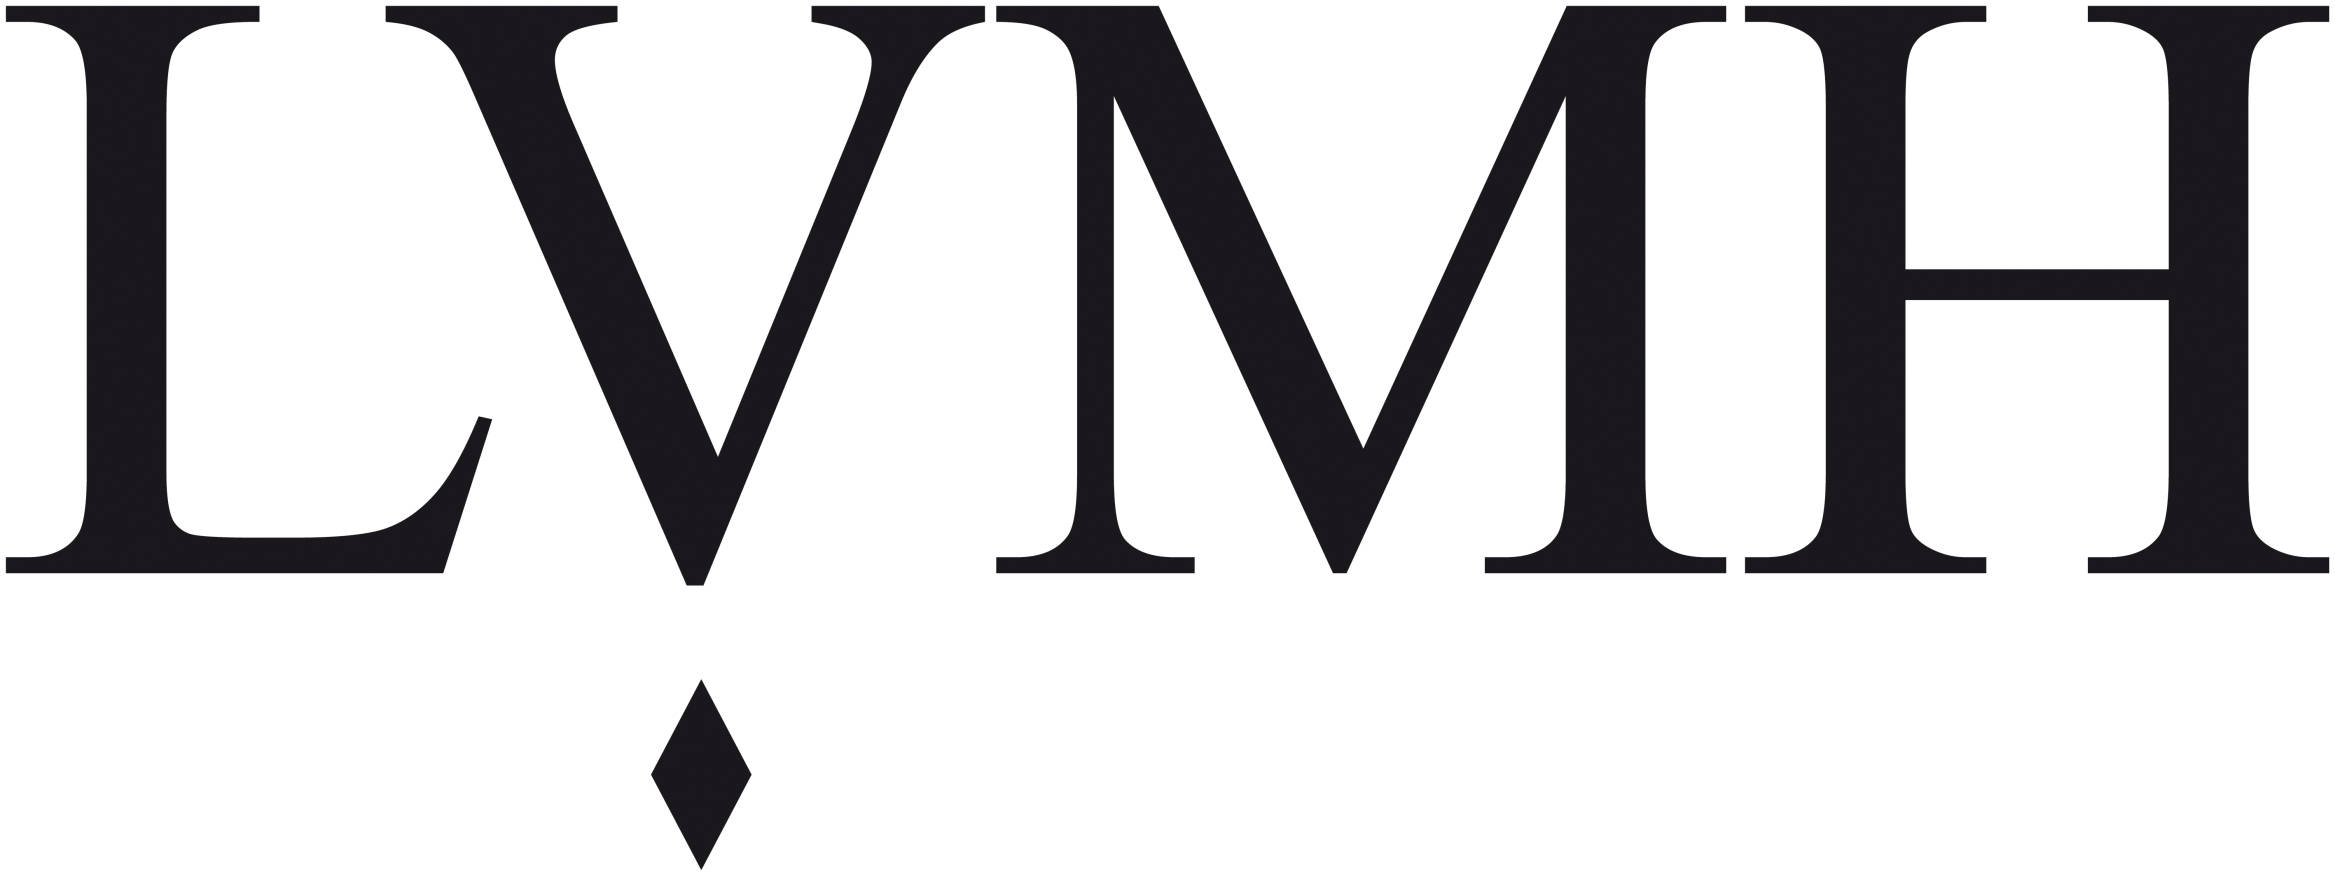 LVMH ART logo 2018